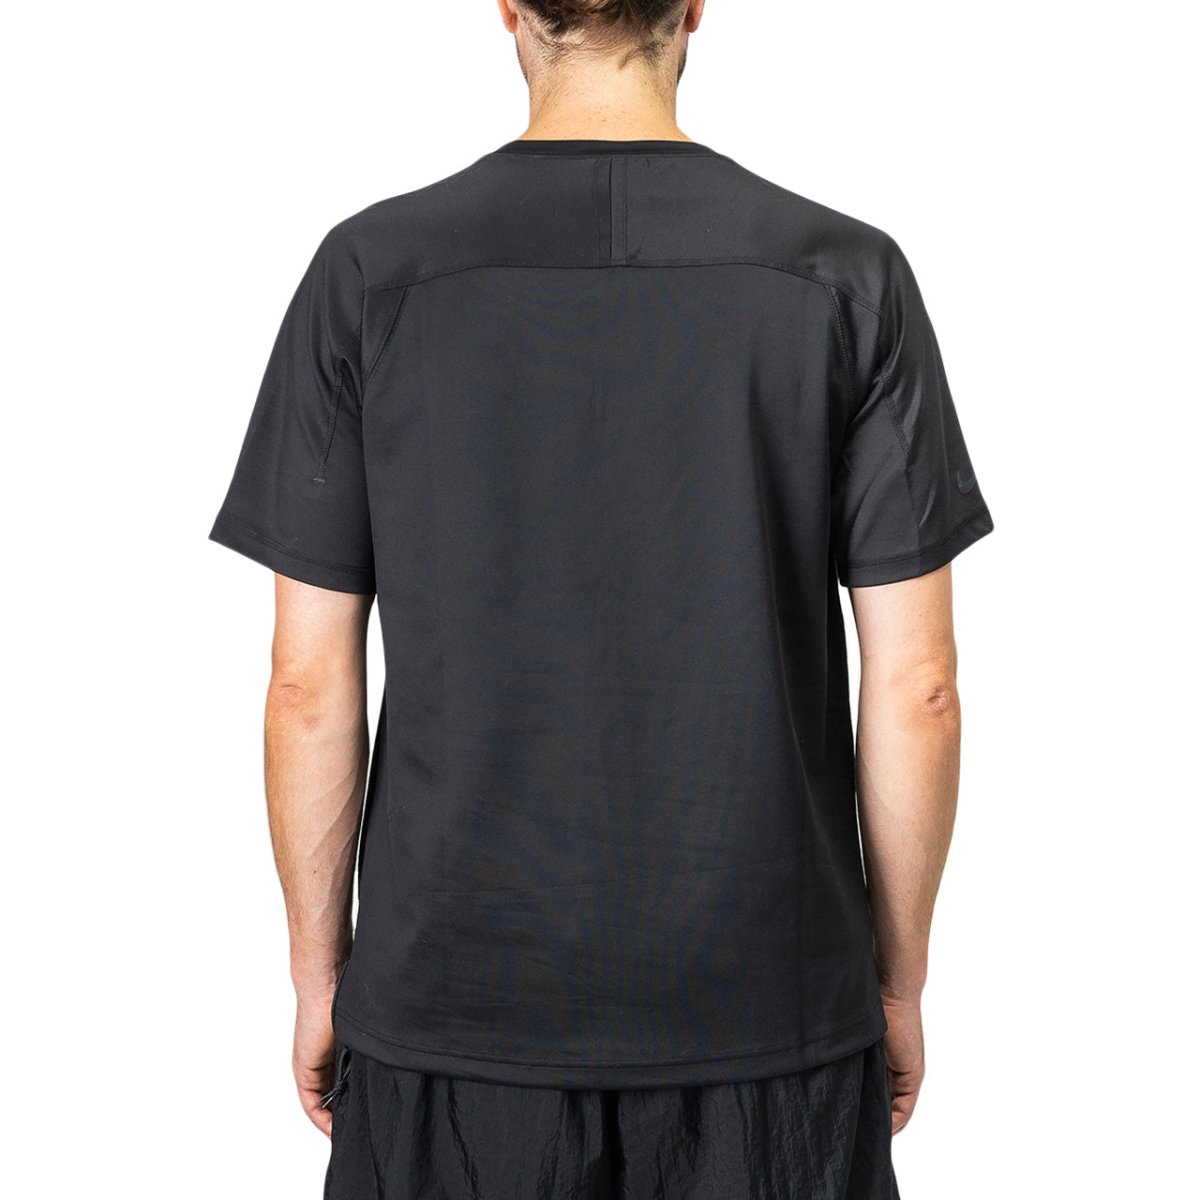 Nike Sportswear Tech Pack Tee (Schwarz)  - Allike Store